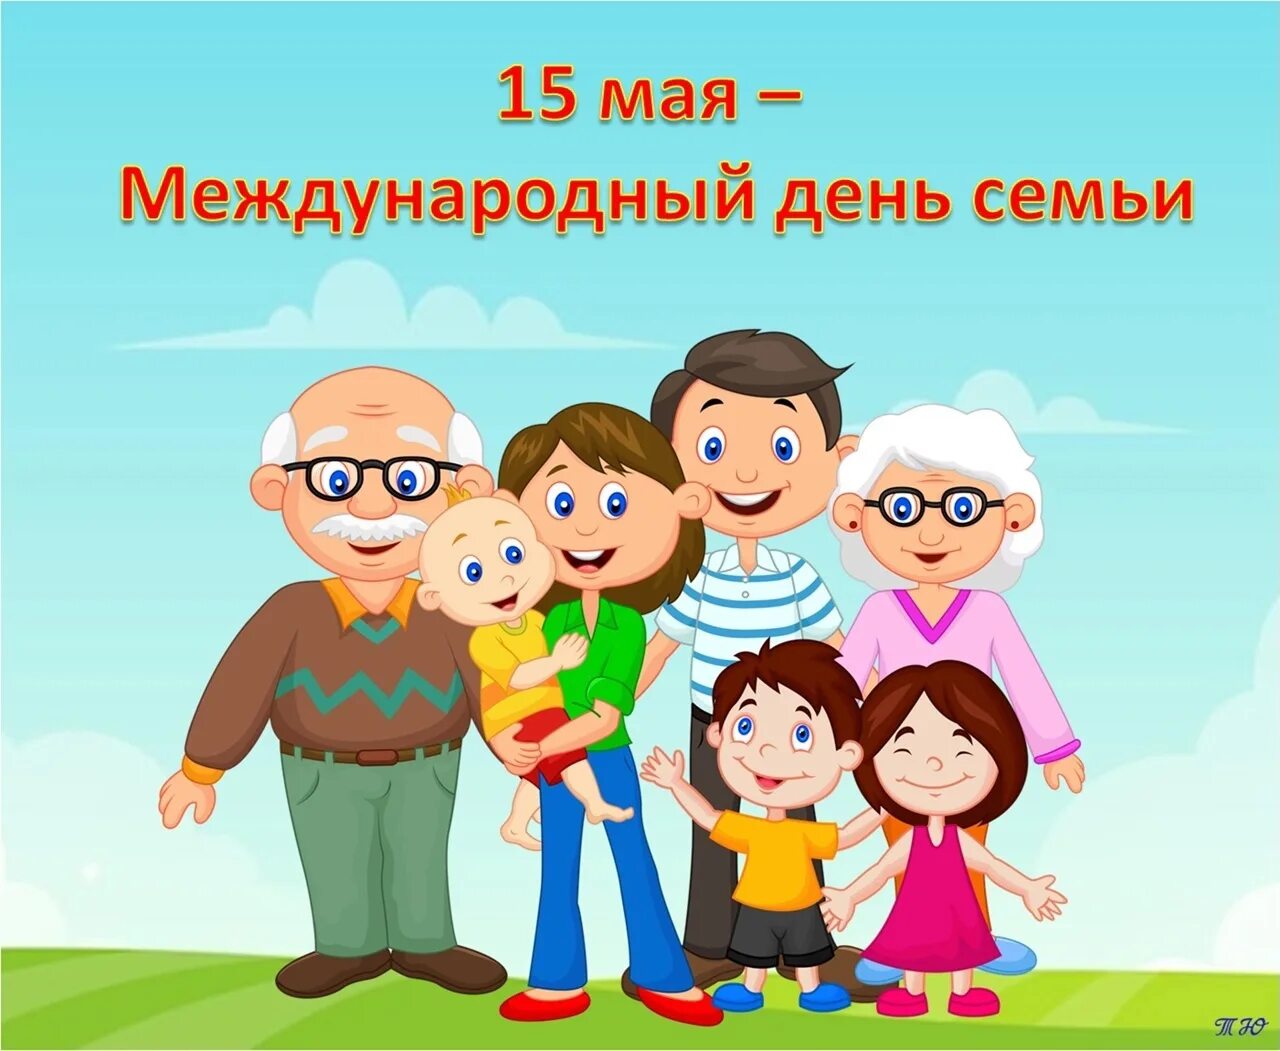 15 мая 2023 г. Международный день семьи. День семьи 15 мая. Международный день семьи (International Day of Families). Международный день семьи картинки.